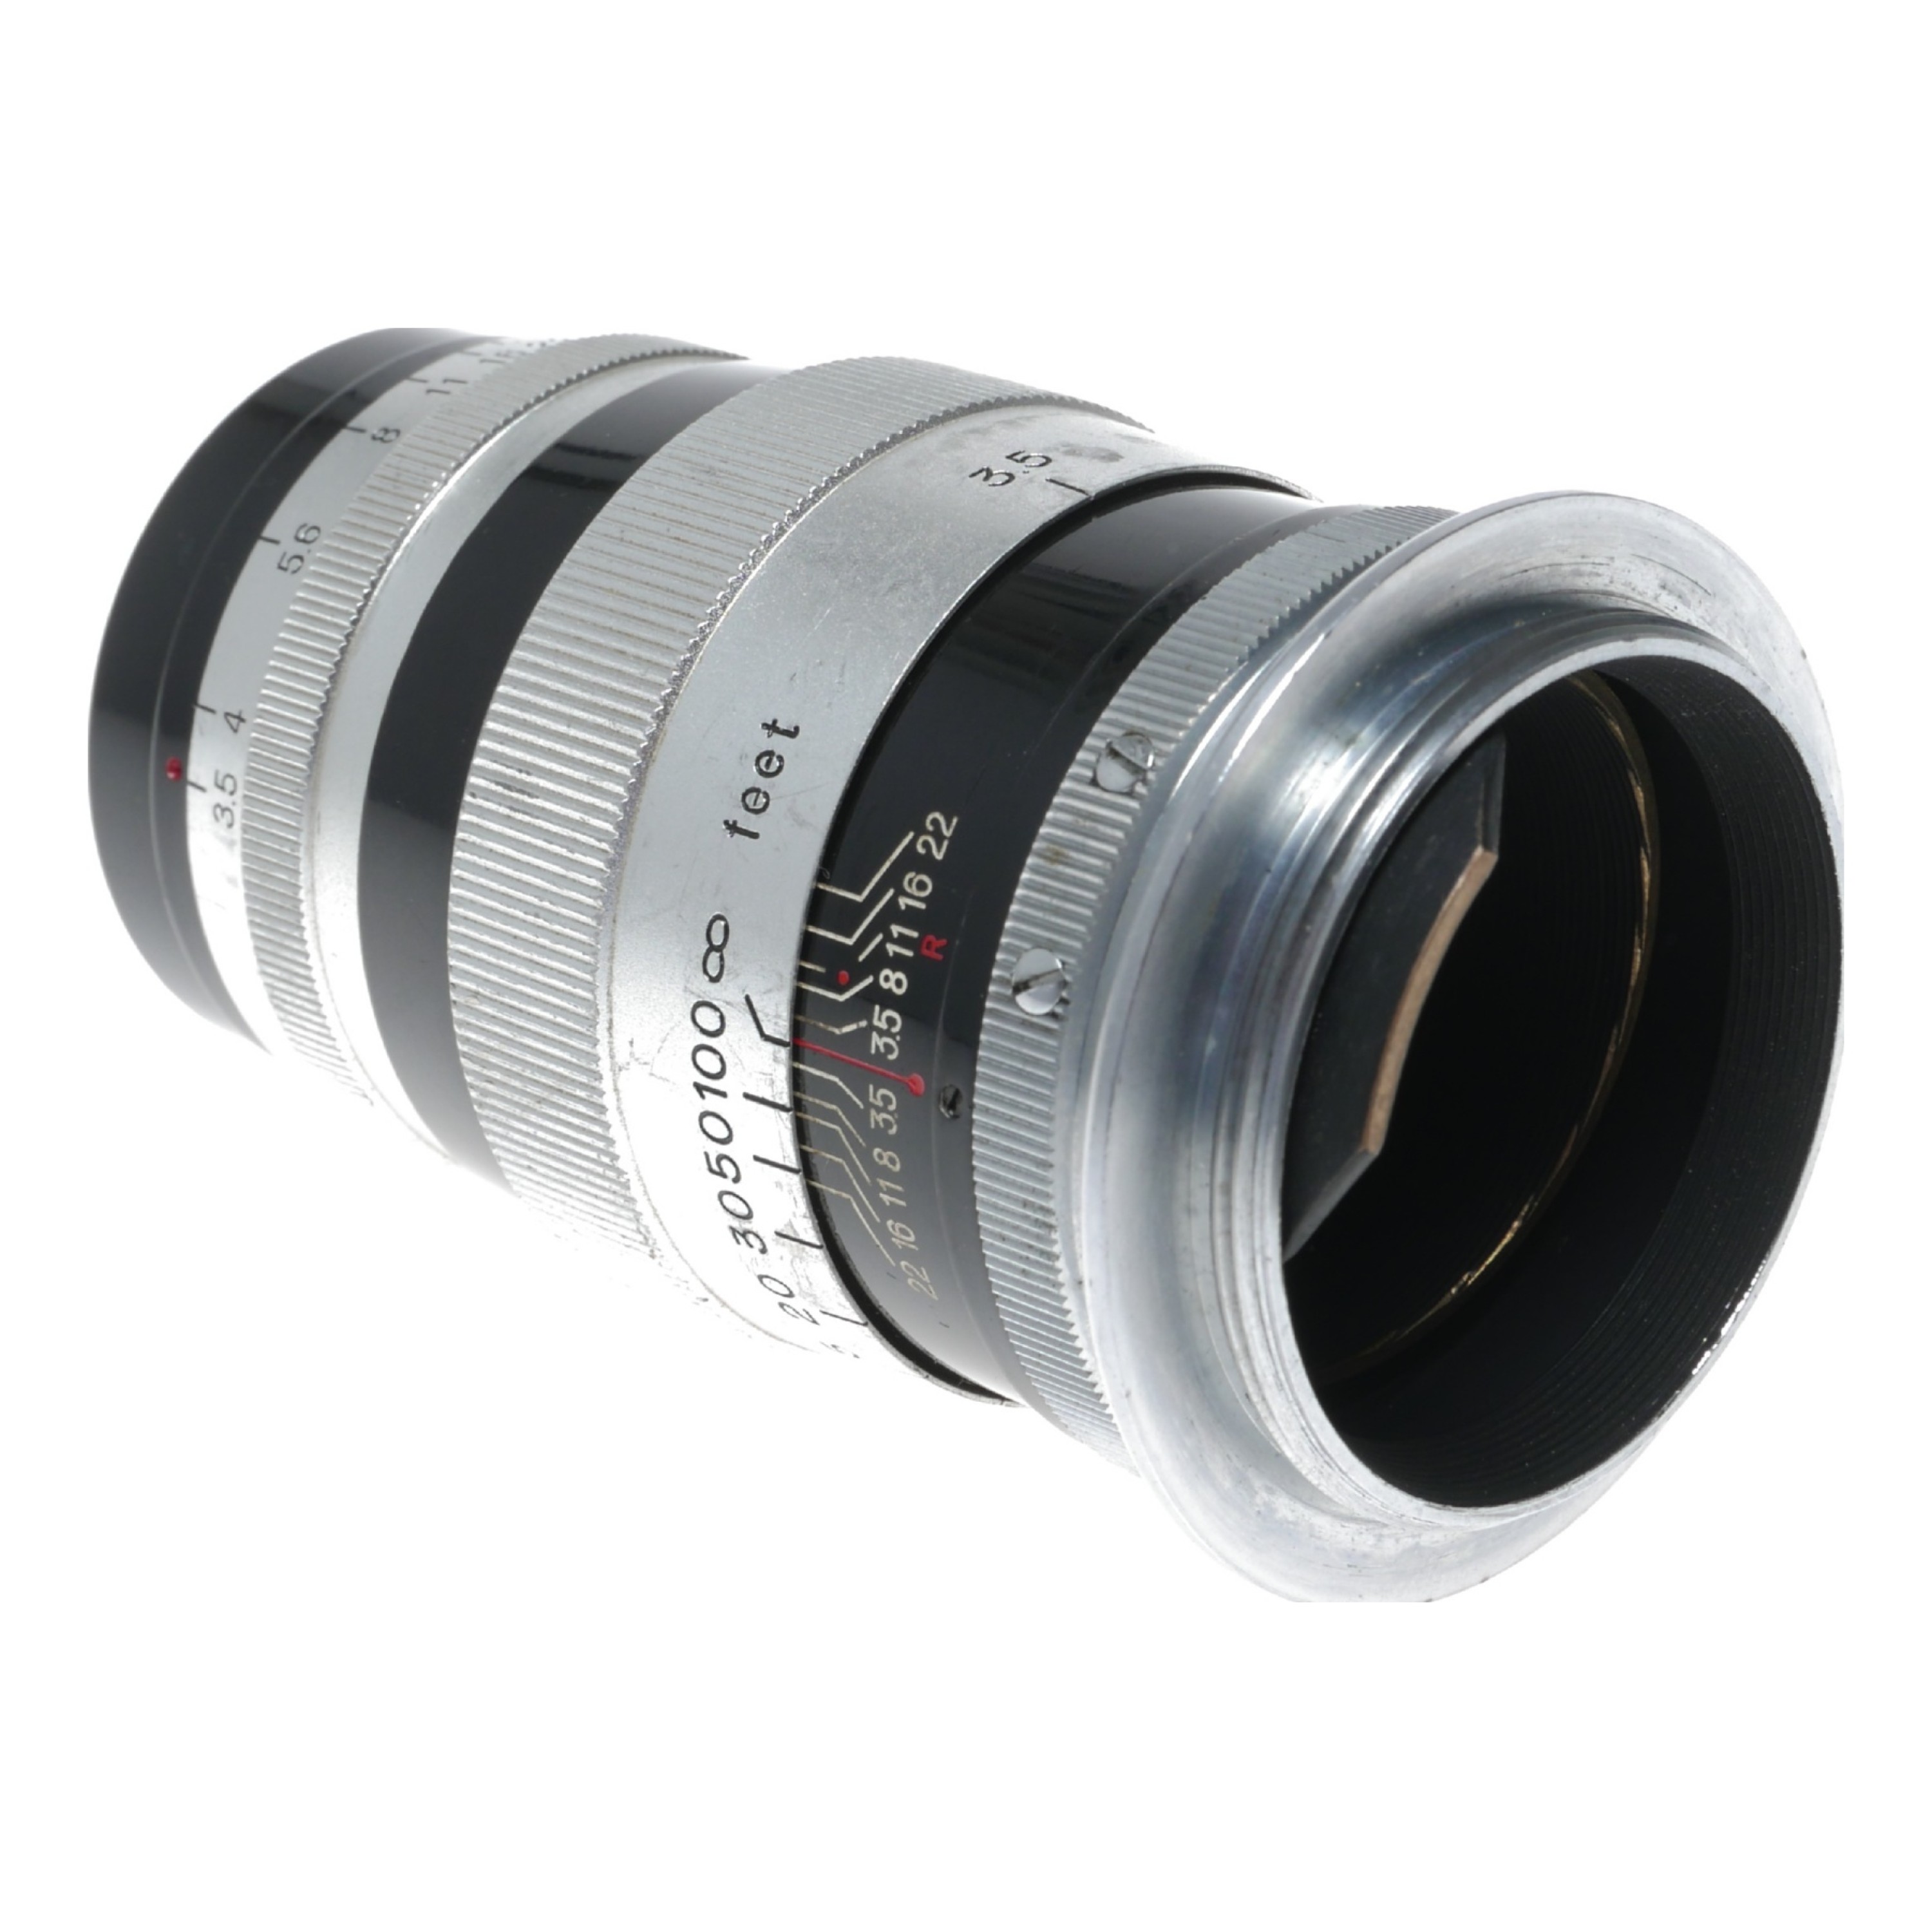 Canon lens 100mm f3.5 RF coupled vintage 3.5/100 M39 LTM mount